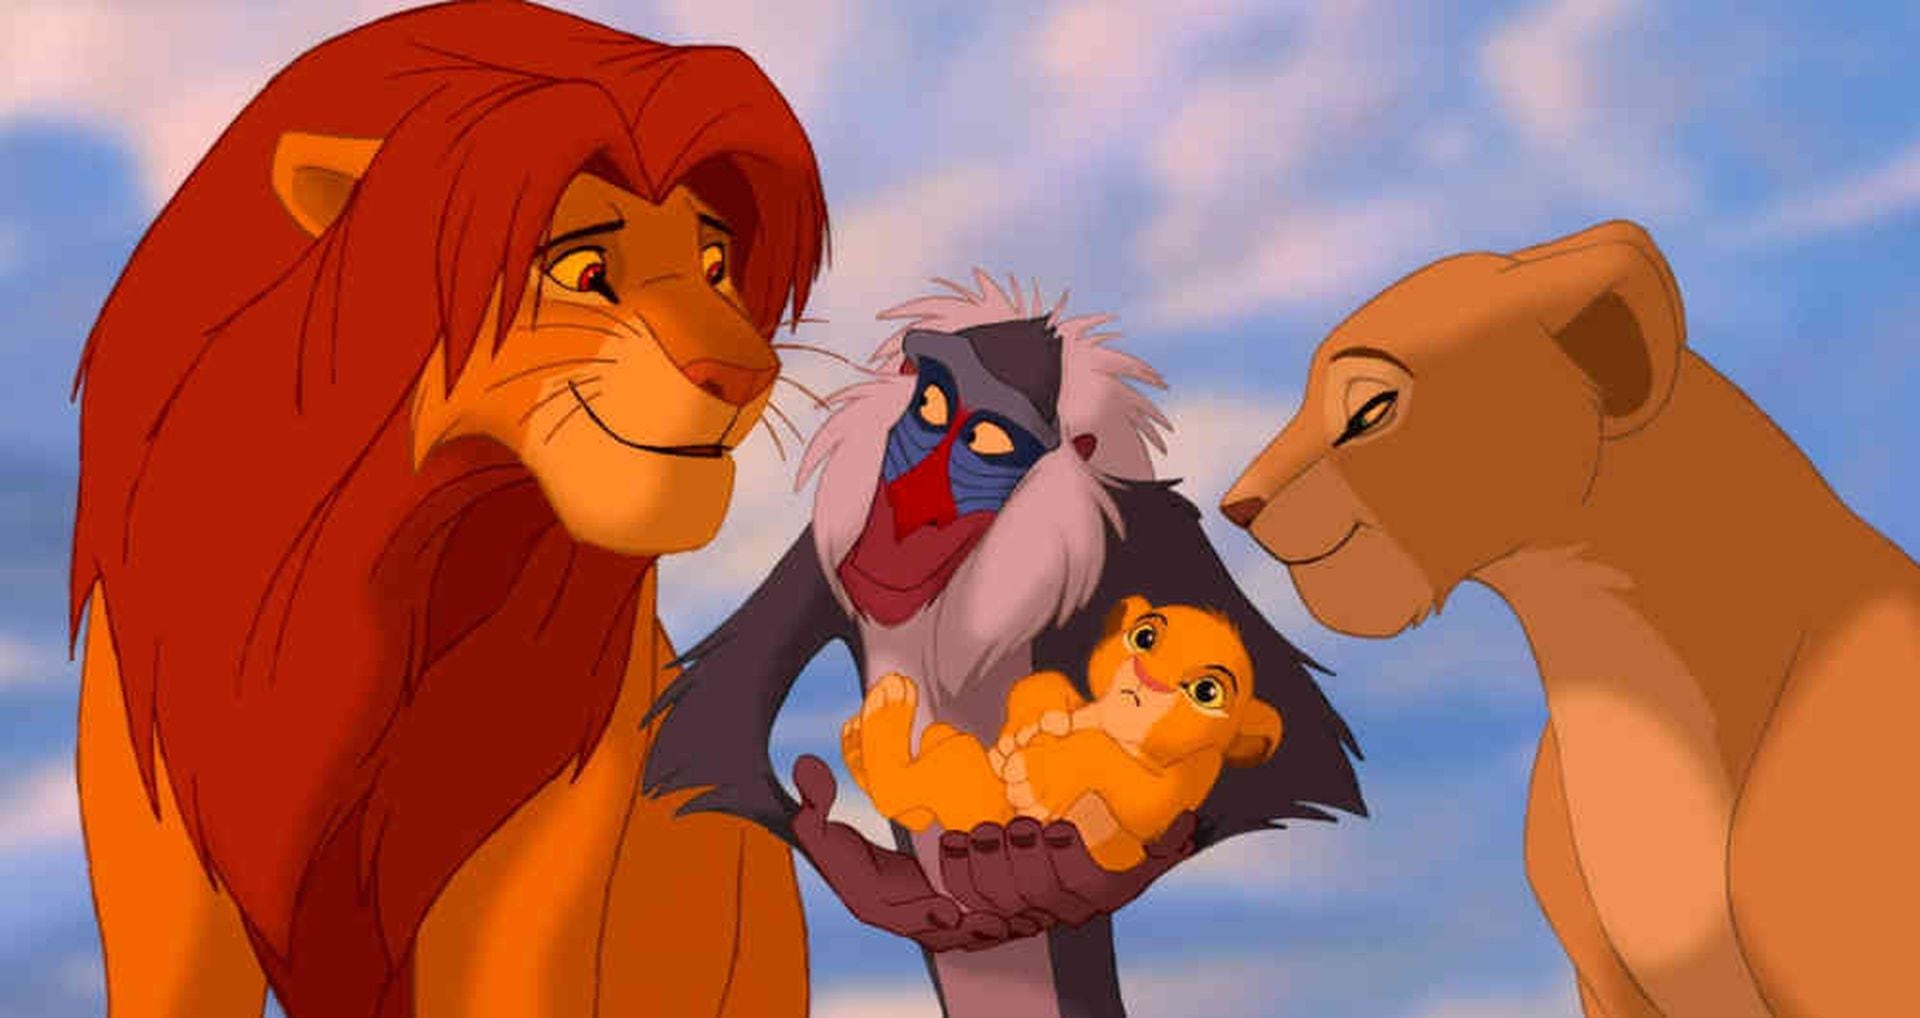 Por qué El rey león es la película favorita de los millennials?